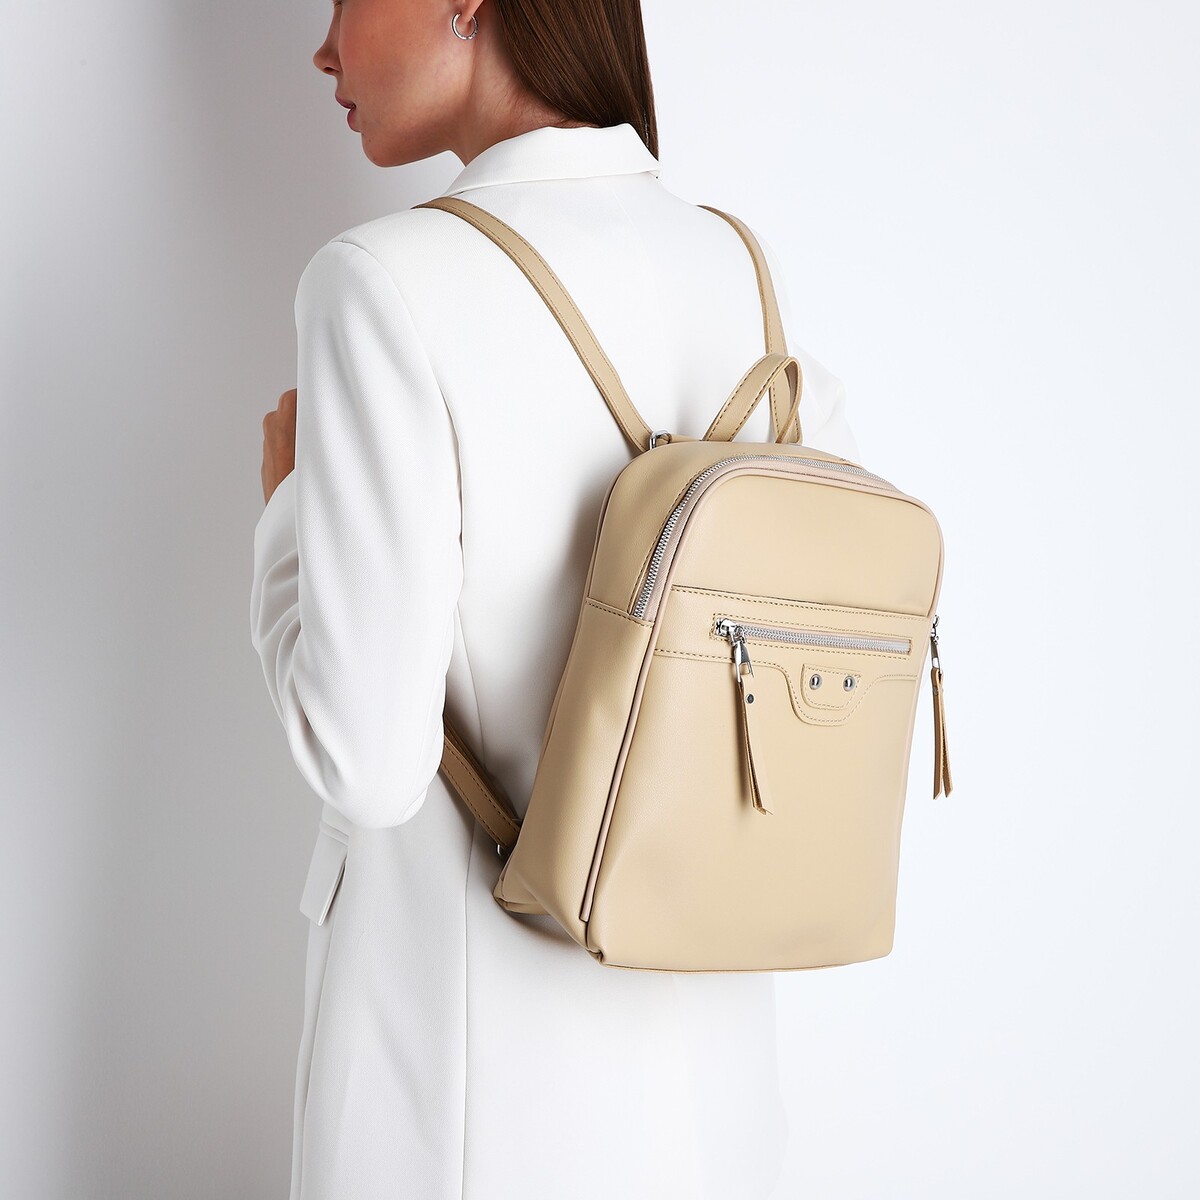 Рюкзак женский из искусственной кожи на молнии, 3 кармана, цвет бежевый рюкзак молодежный из текстиля на молнии 3 кармана серо бежевый